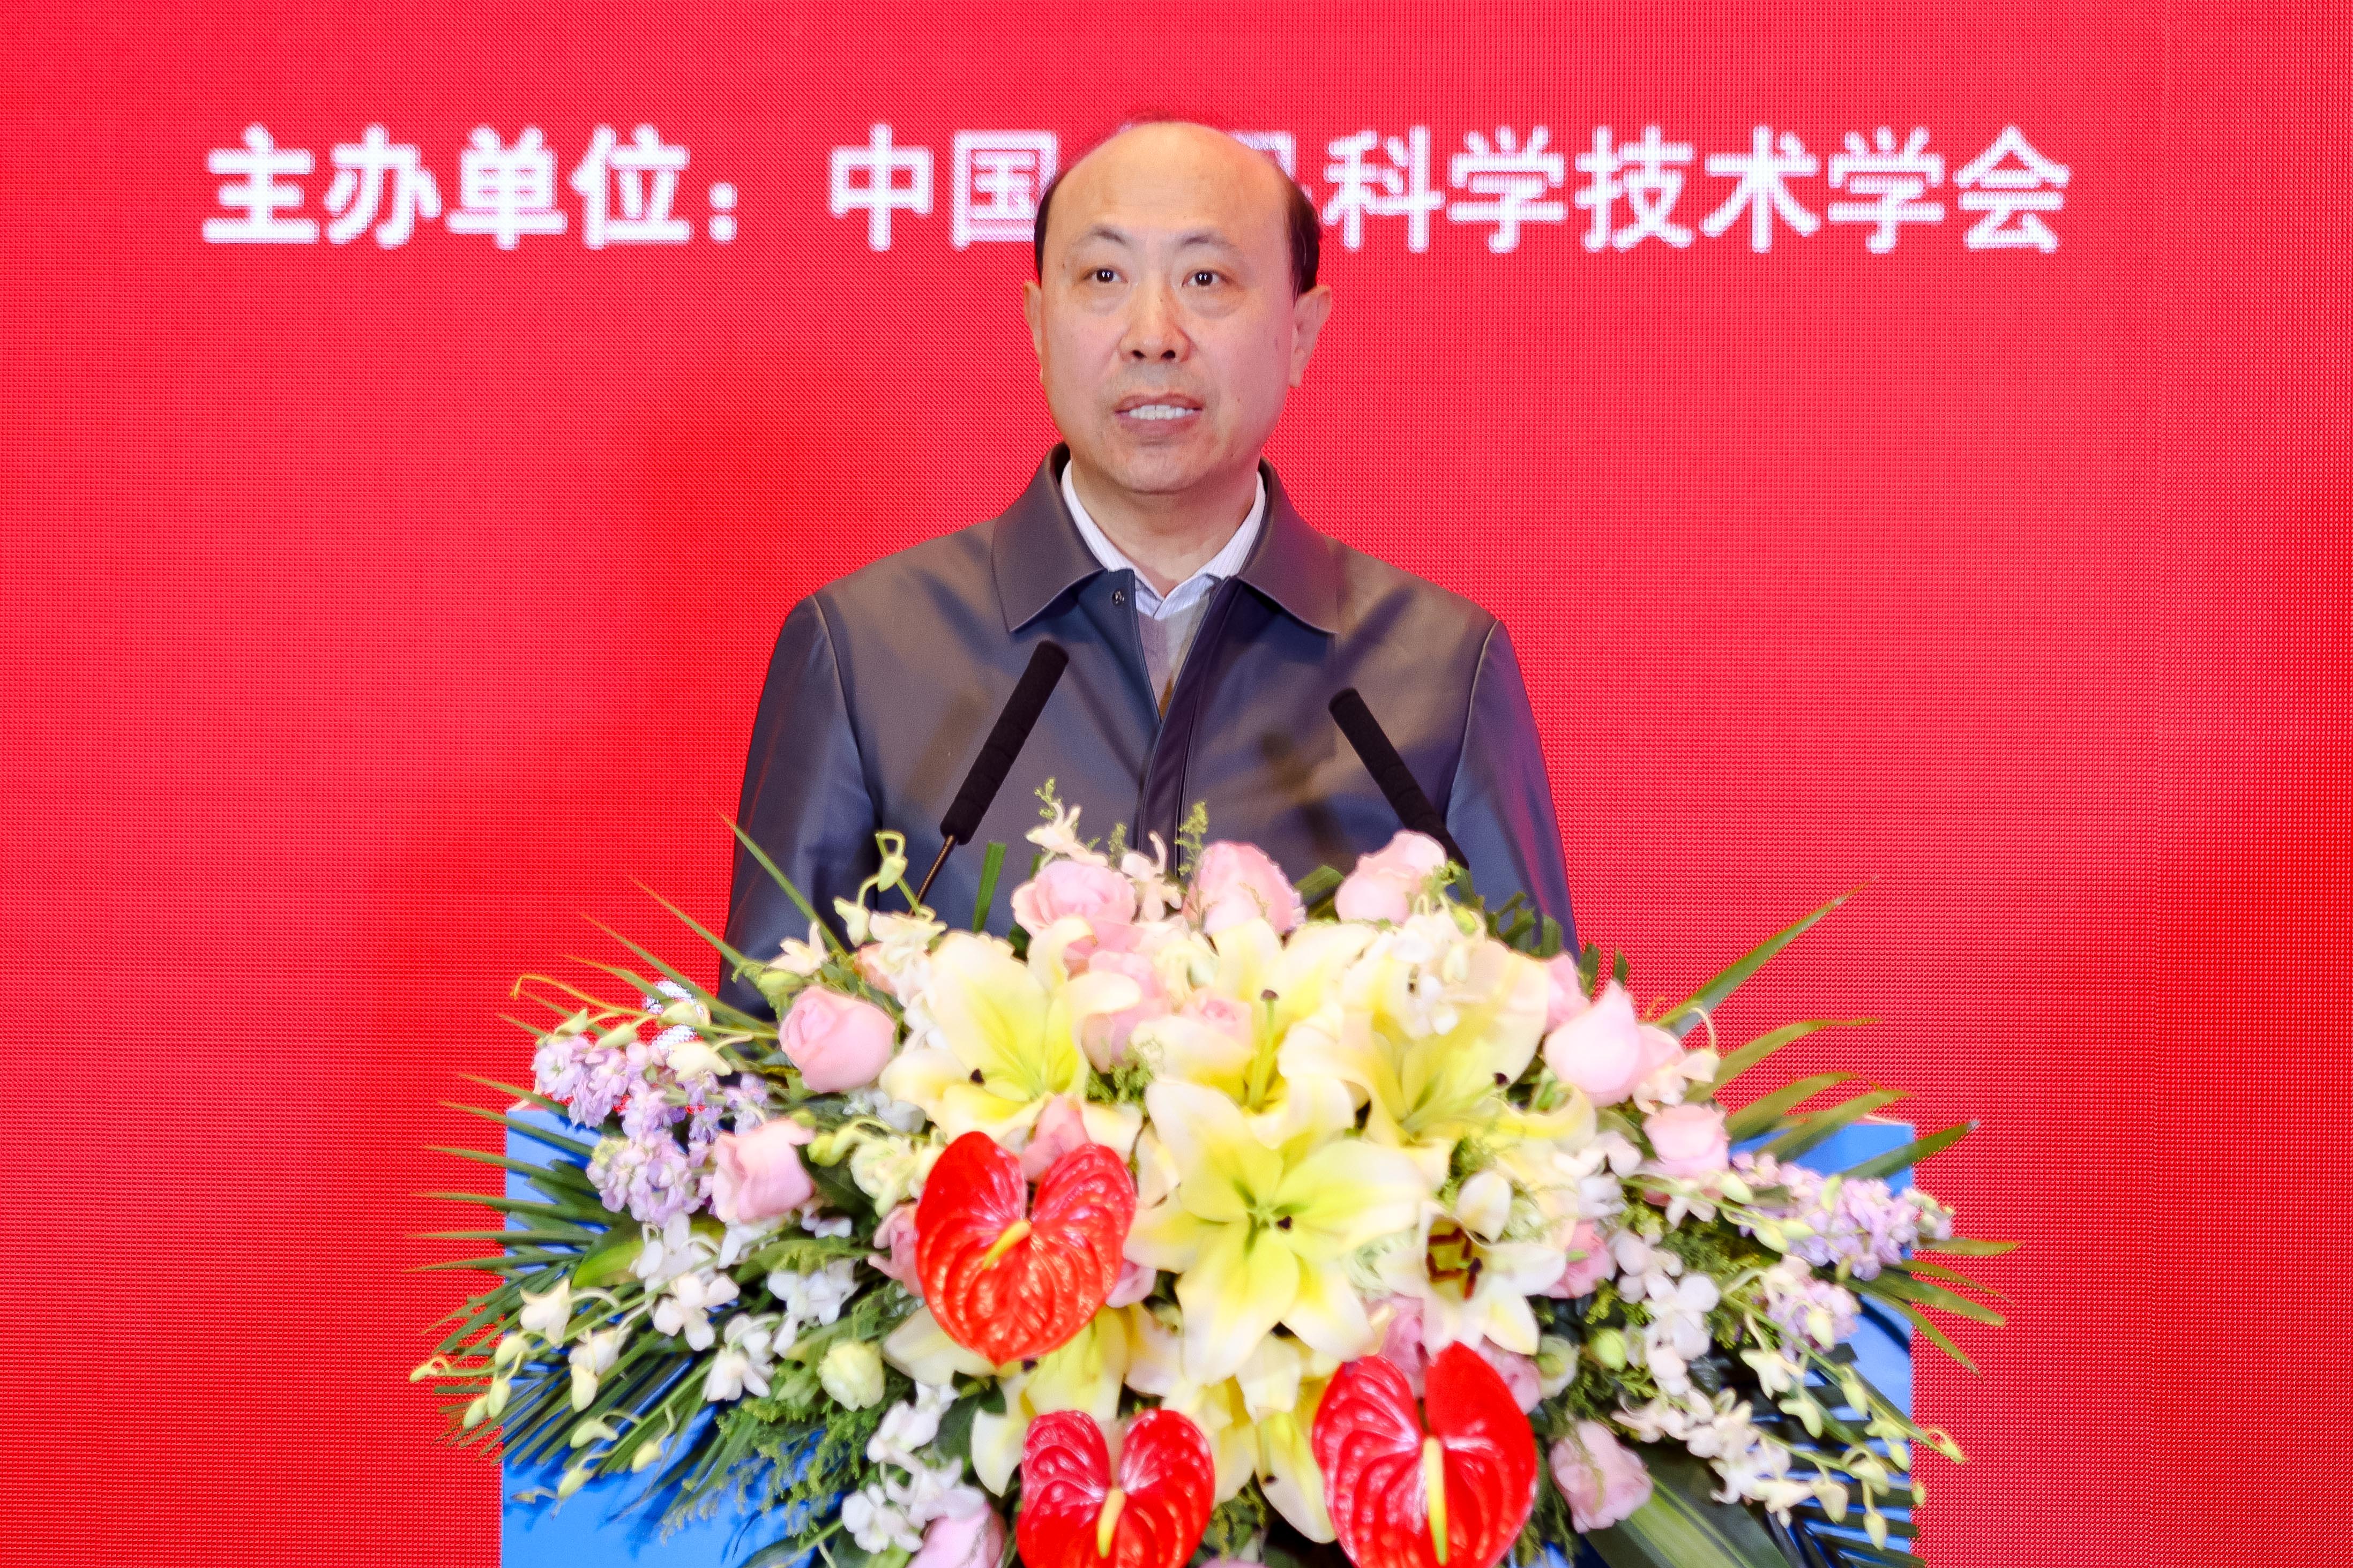 中国食品科学技术学会副理事长任发政院士主持颁奖仪式